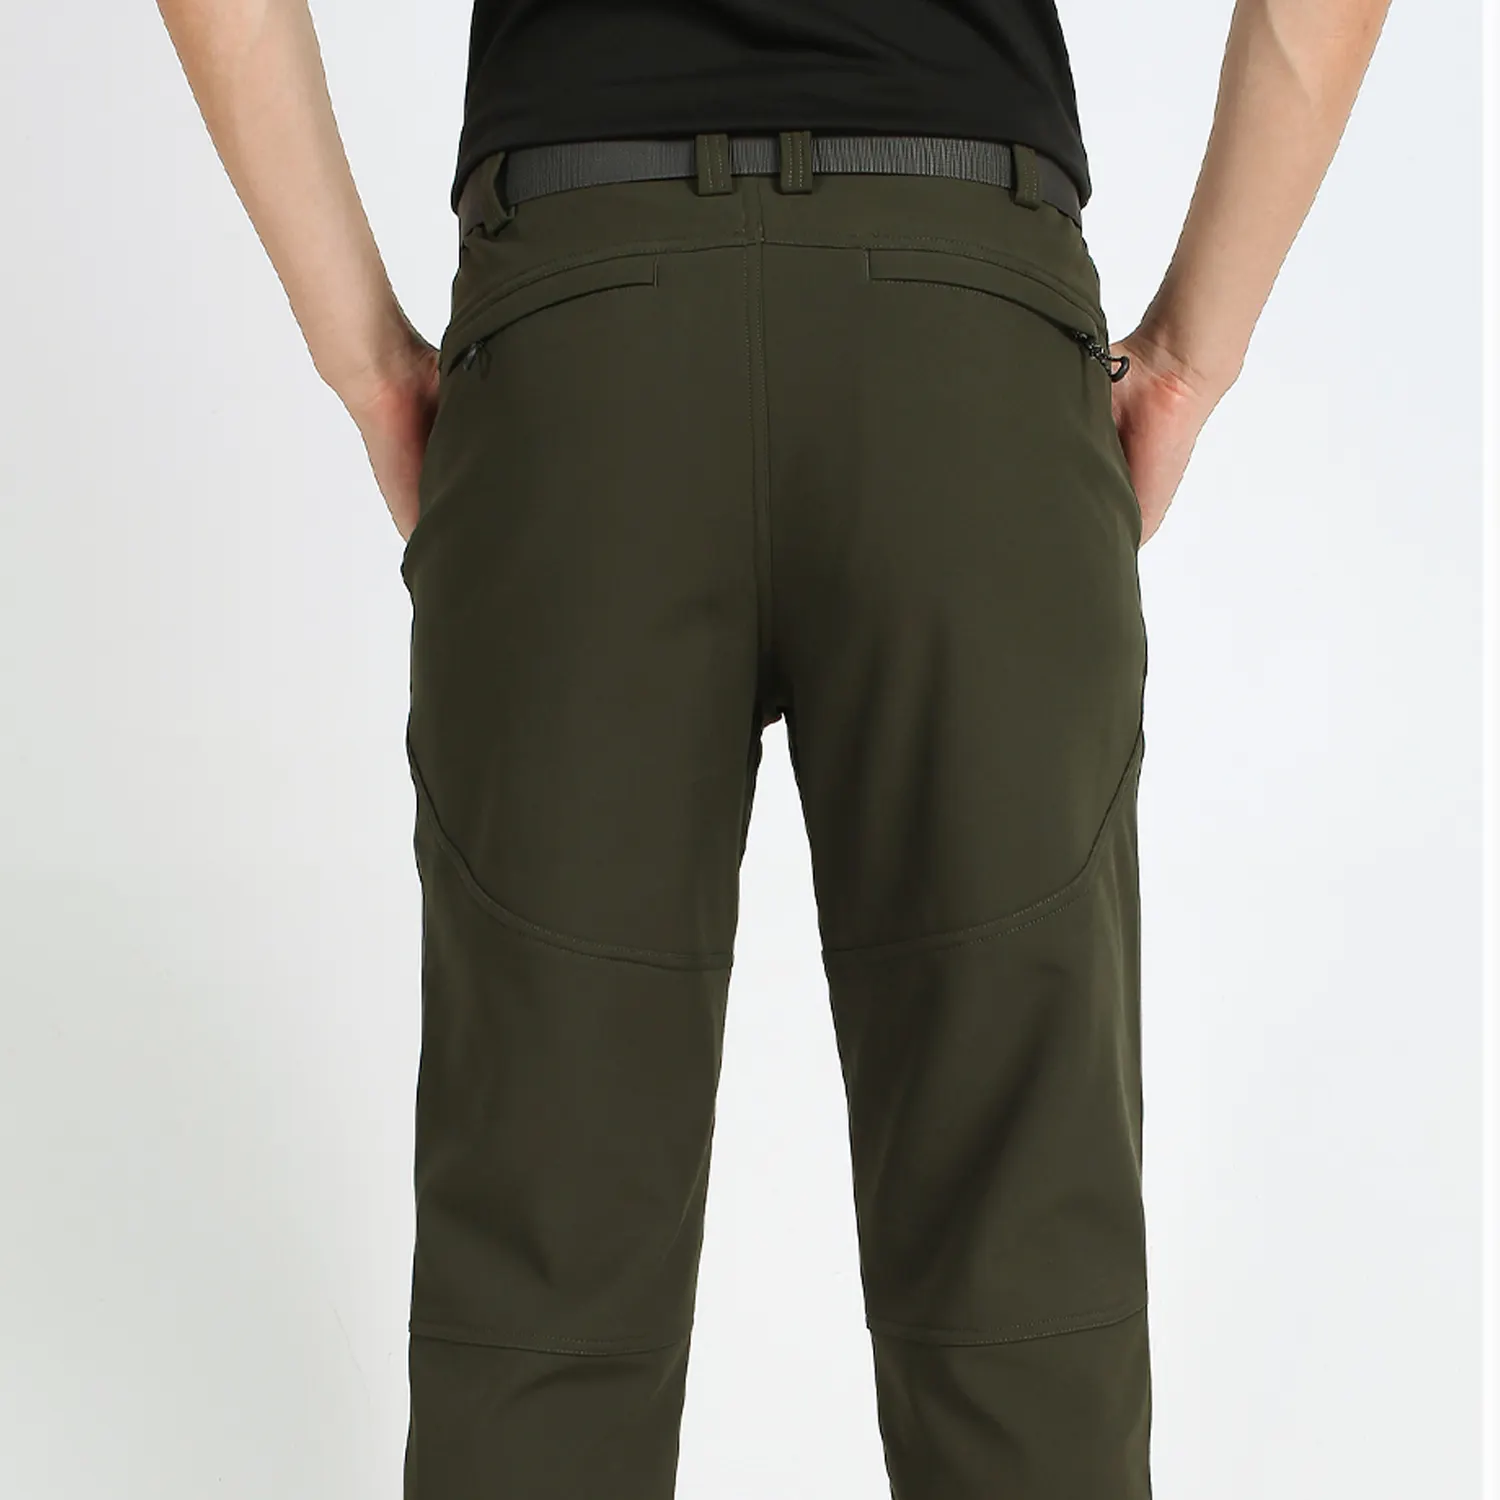 Pantaloni elasticizzati di buona qualità da lavoro pantaloni moda pantaloni da trekking per uomo pantaloni sportivi dritti lavorati a maglia serigrafia